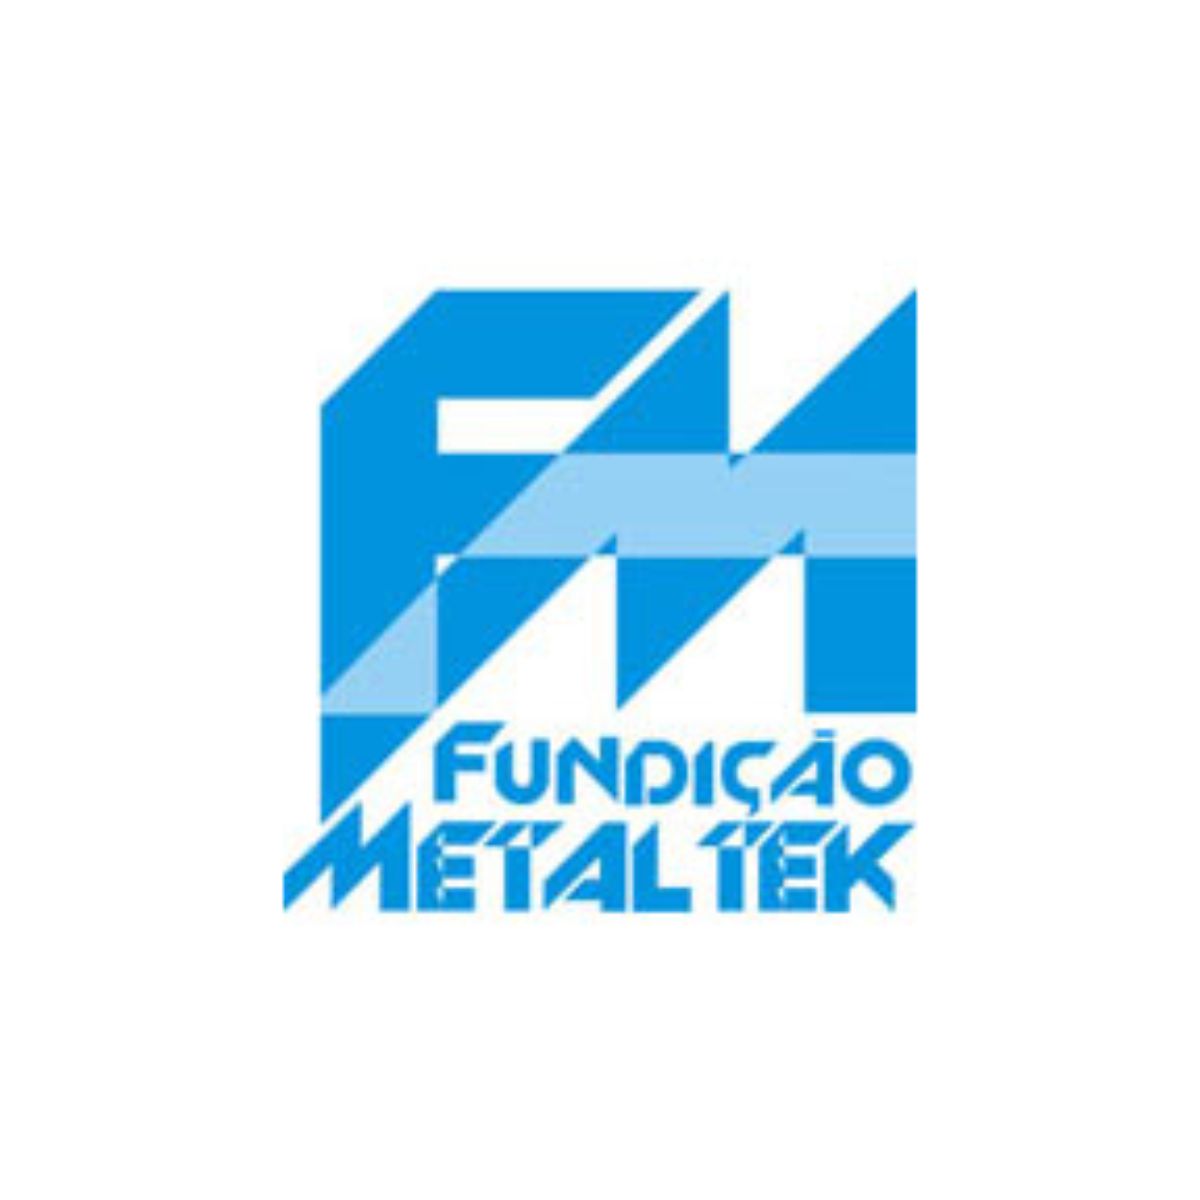 Fundição Metaltek Ltda